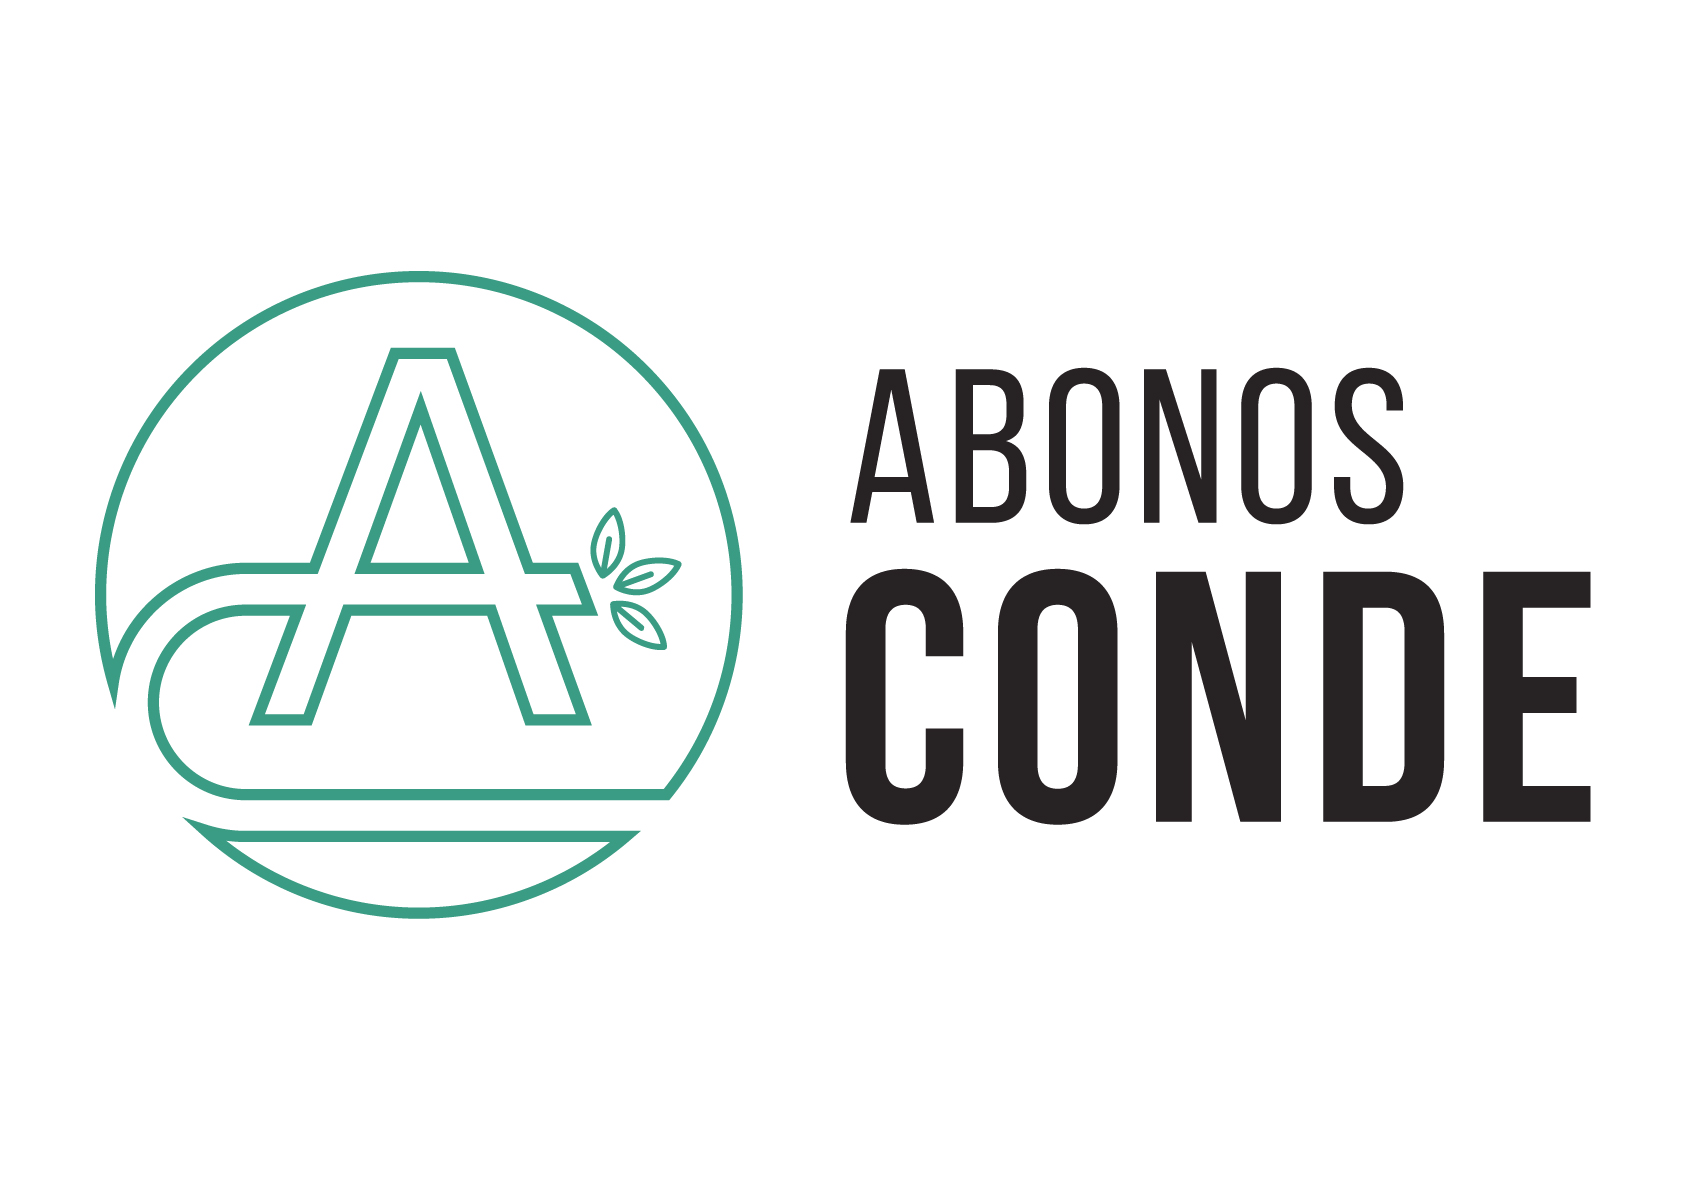 ABONOS CONDE, S.L.